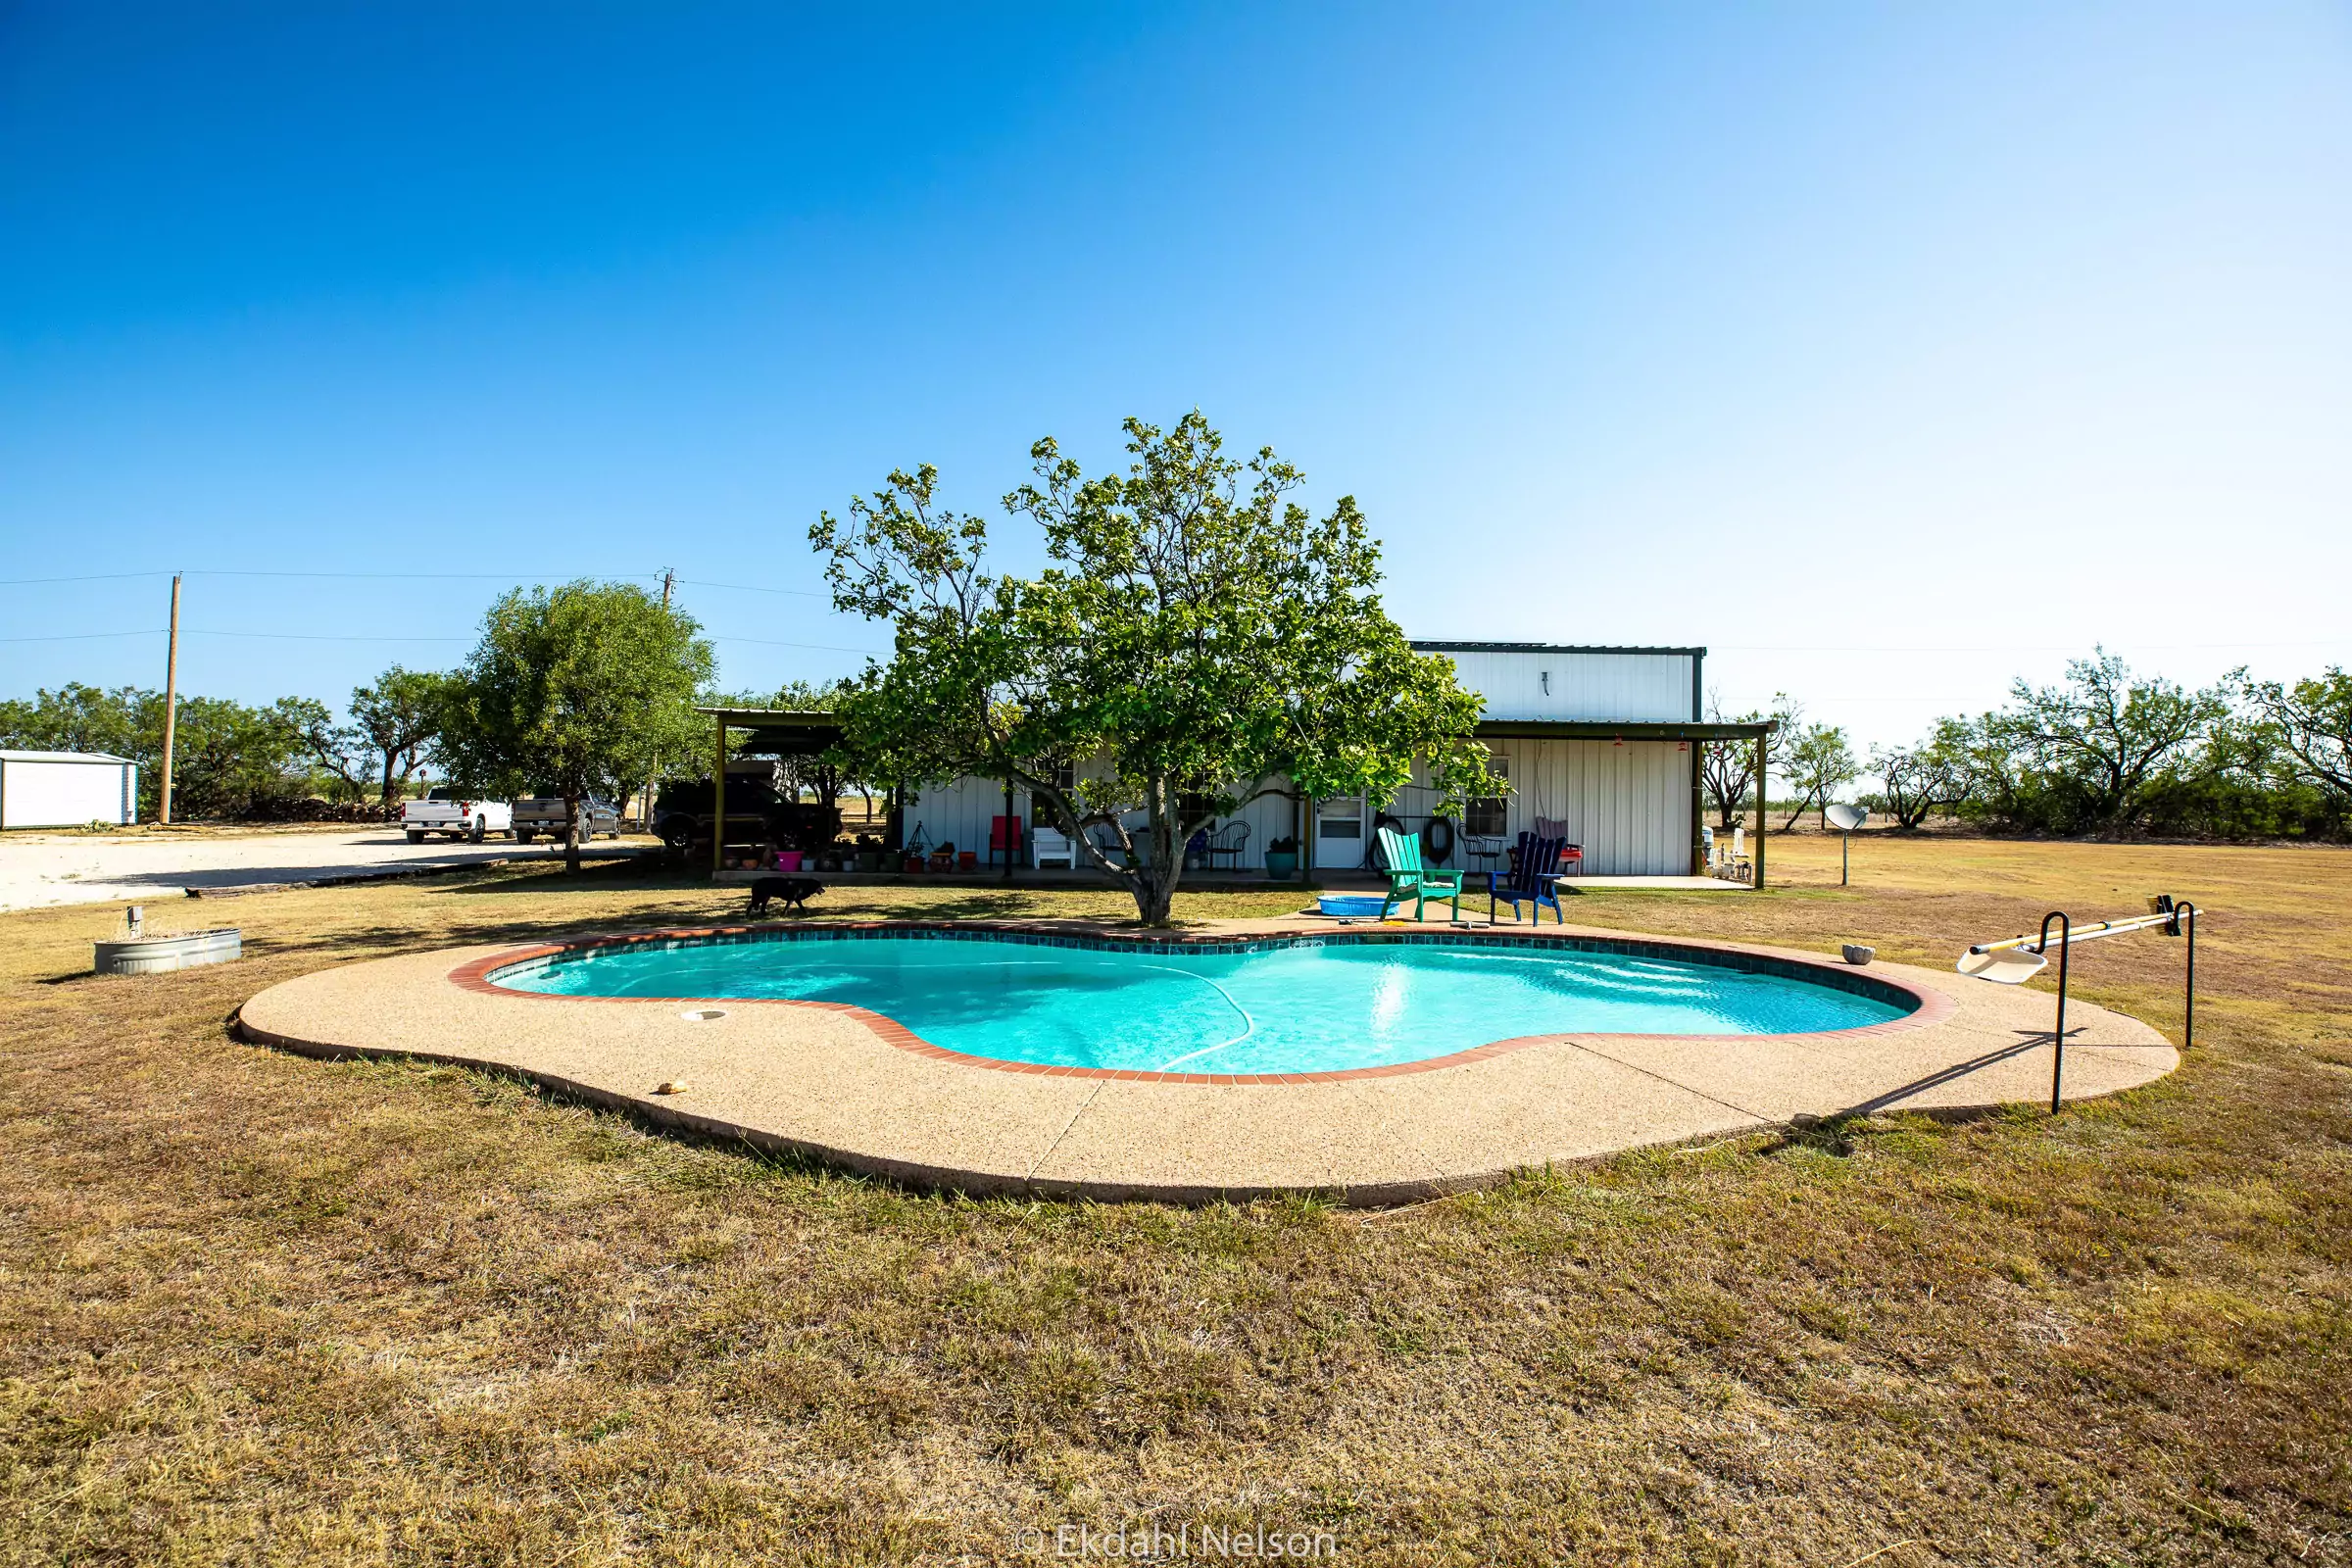 Ranch Land for Sale Abilene TX - pool - Ekdahl Nelson Real Estate